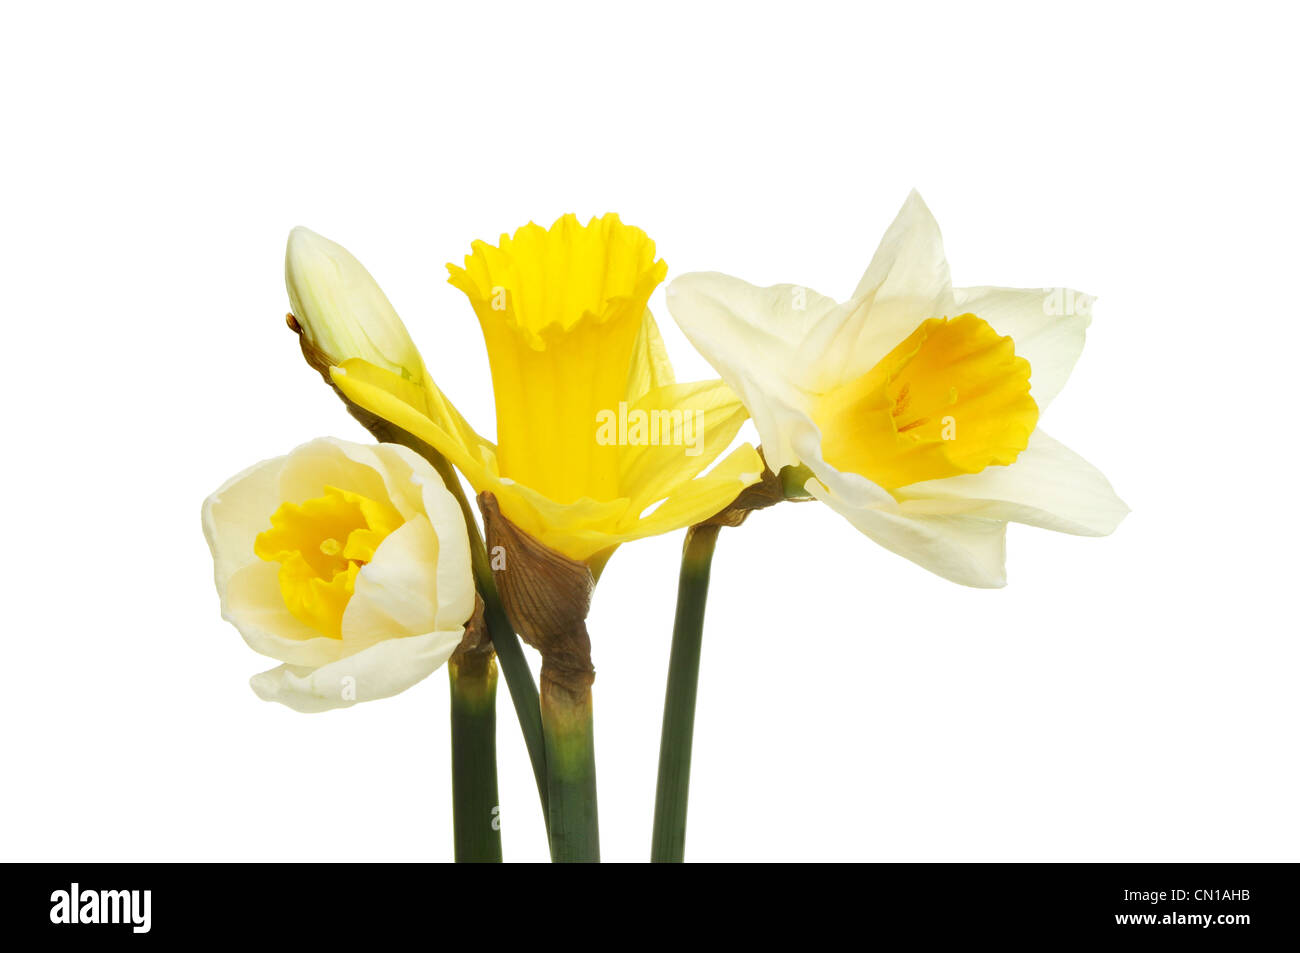 Blanc et jaune jonquille fleurs et bourgeons isolés contre white Banque D'Images